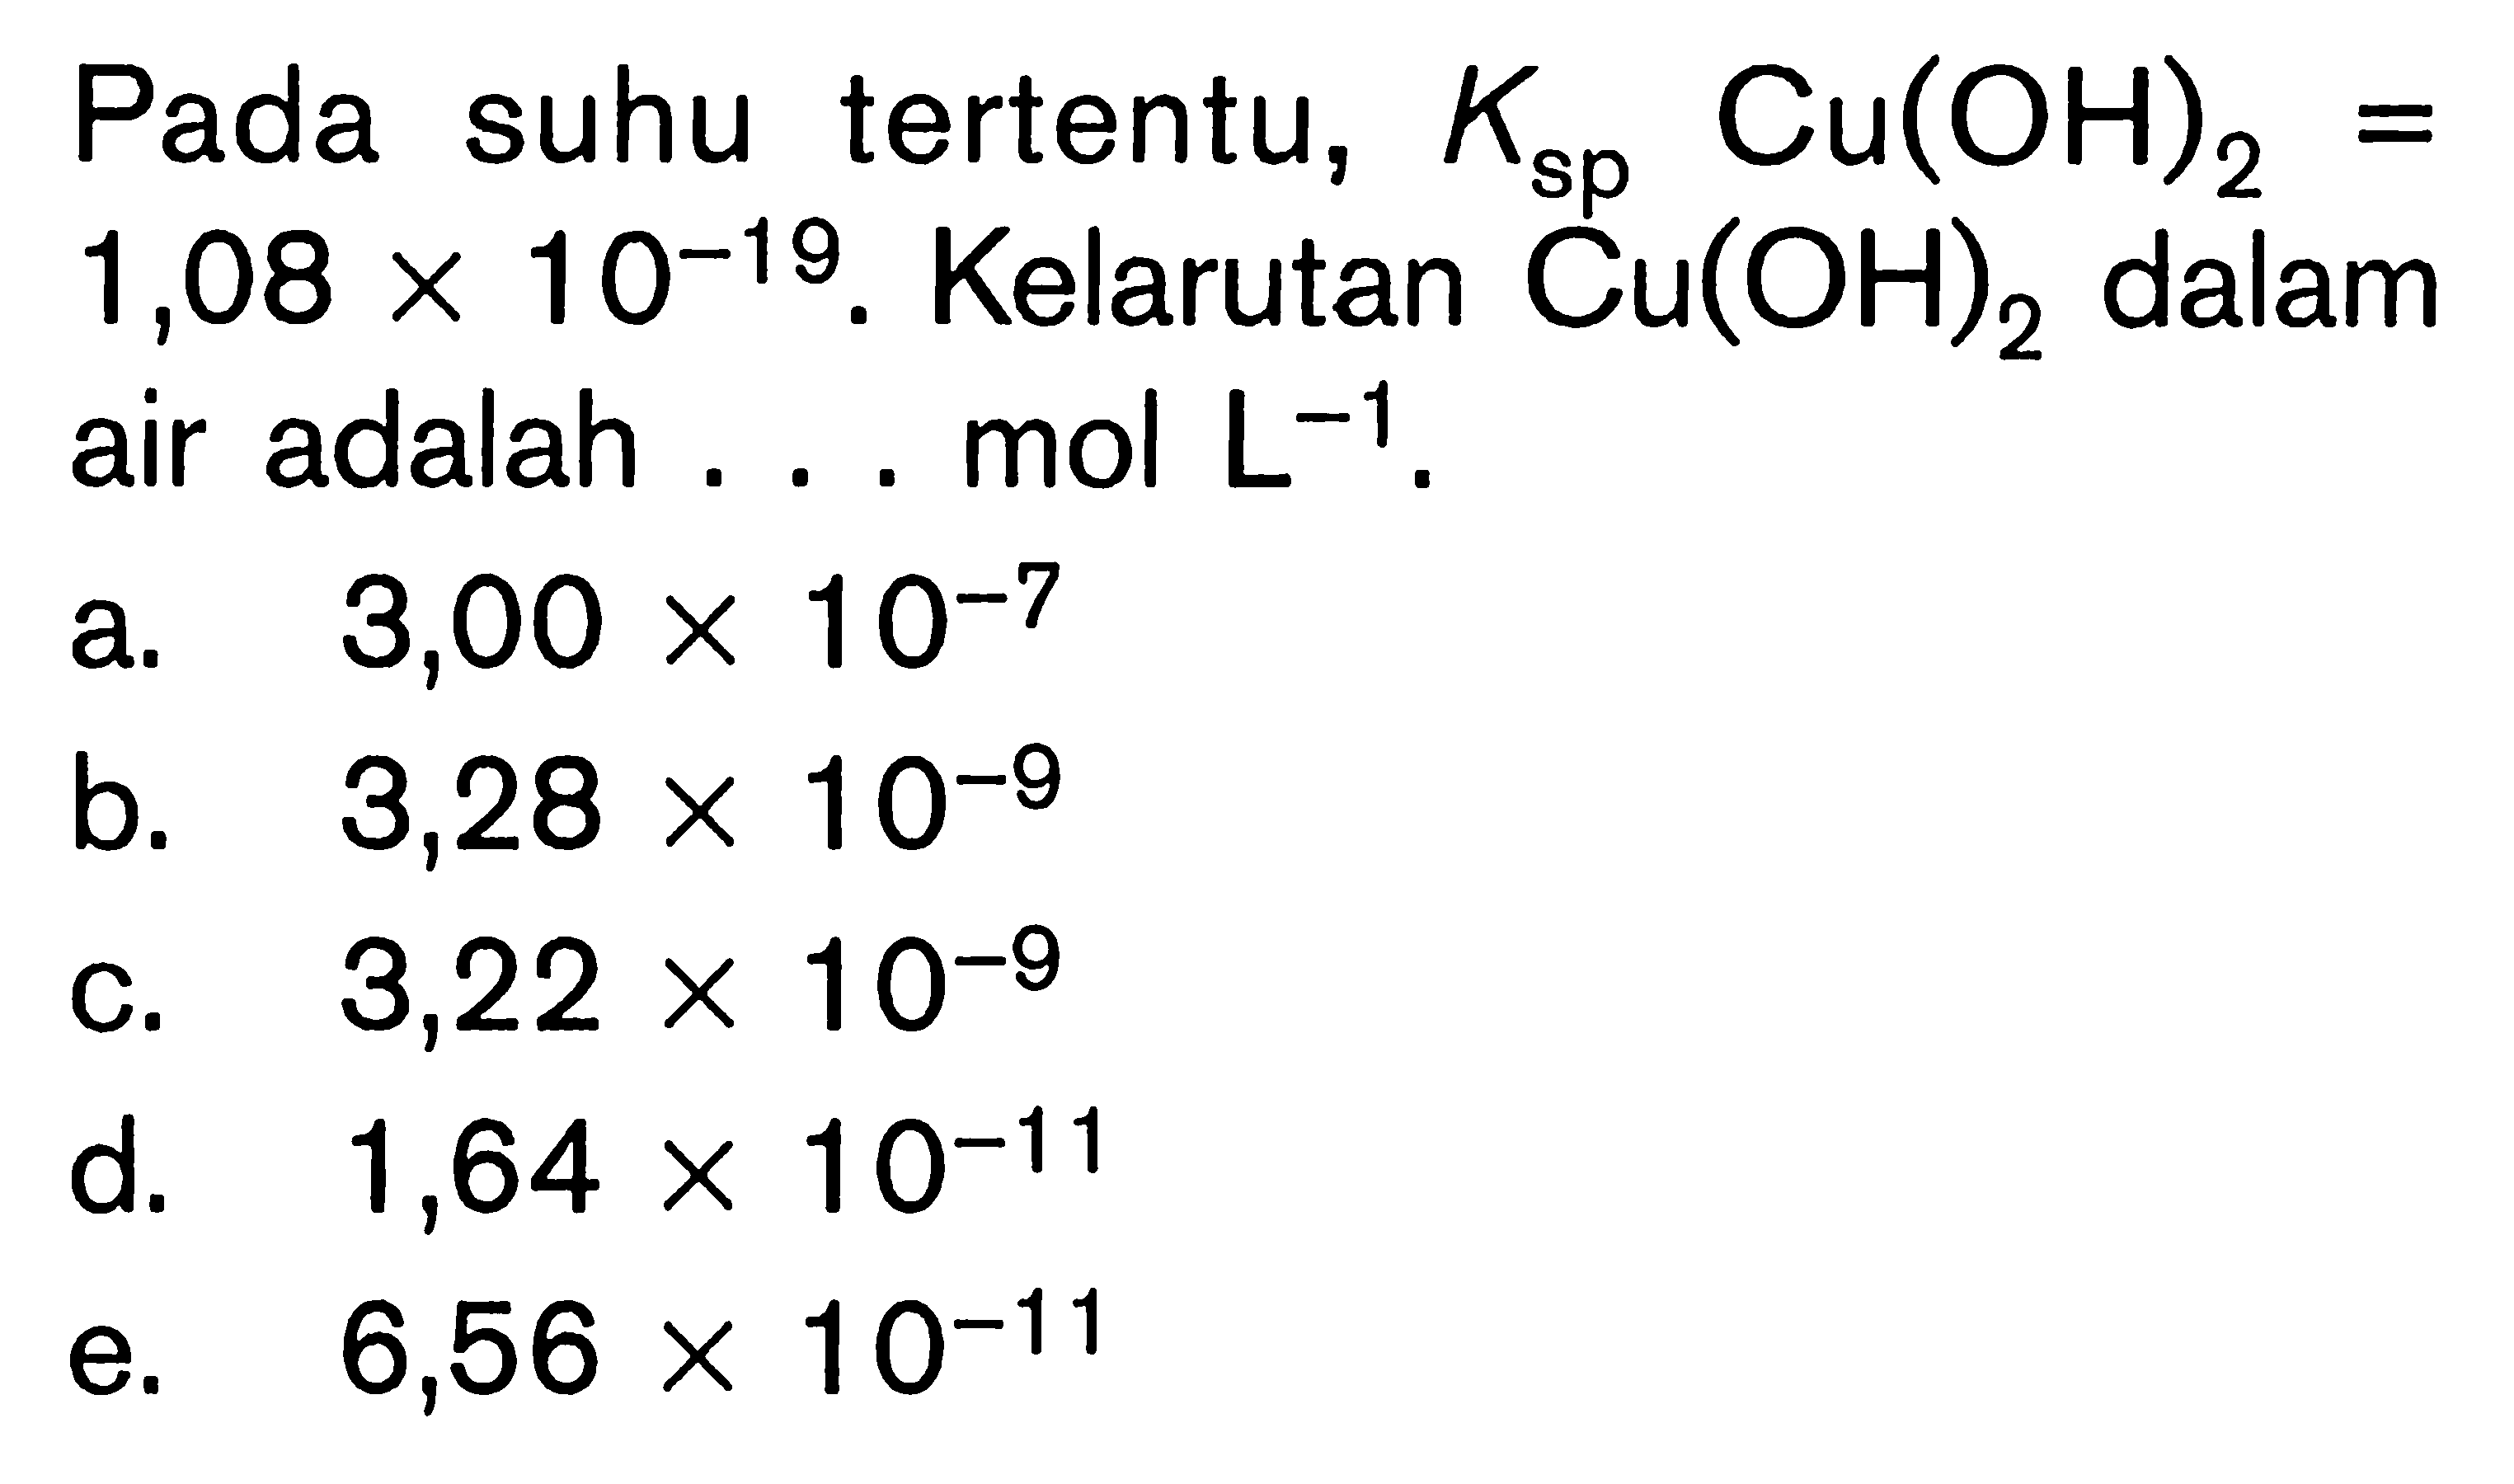 Pada suhu tertentu,  Ksp Cu(OH)2=1,08 x 10^(-19). Kelarutan Cu(OH)2 dalam air adalah ... mol L^(-1).
